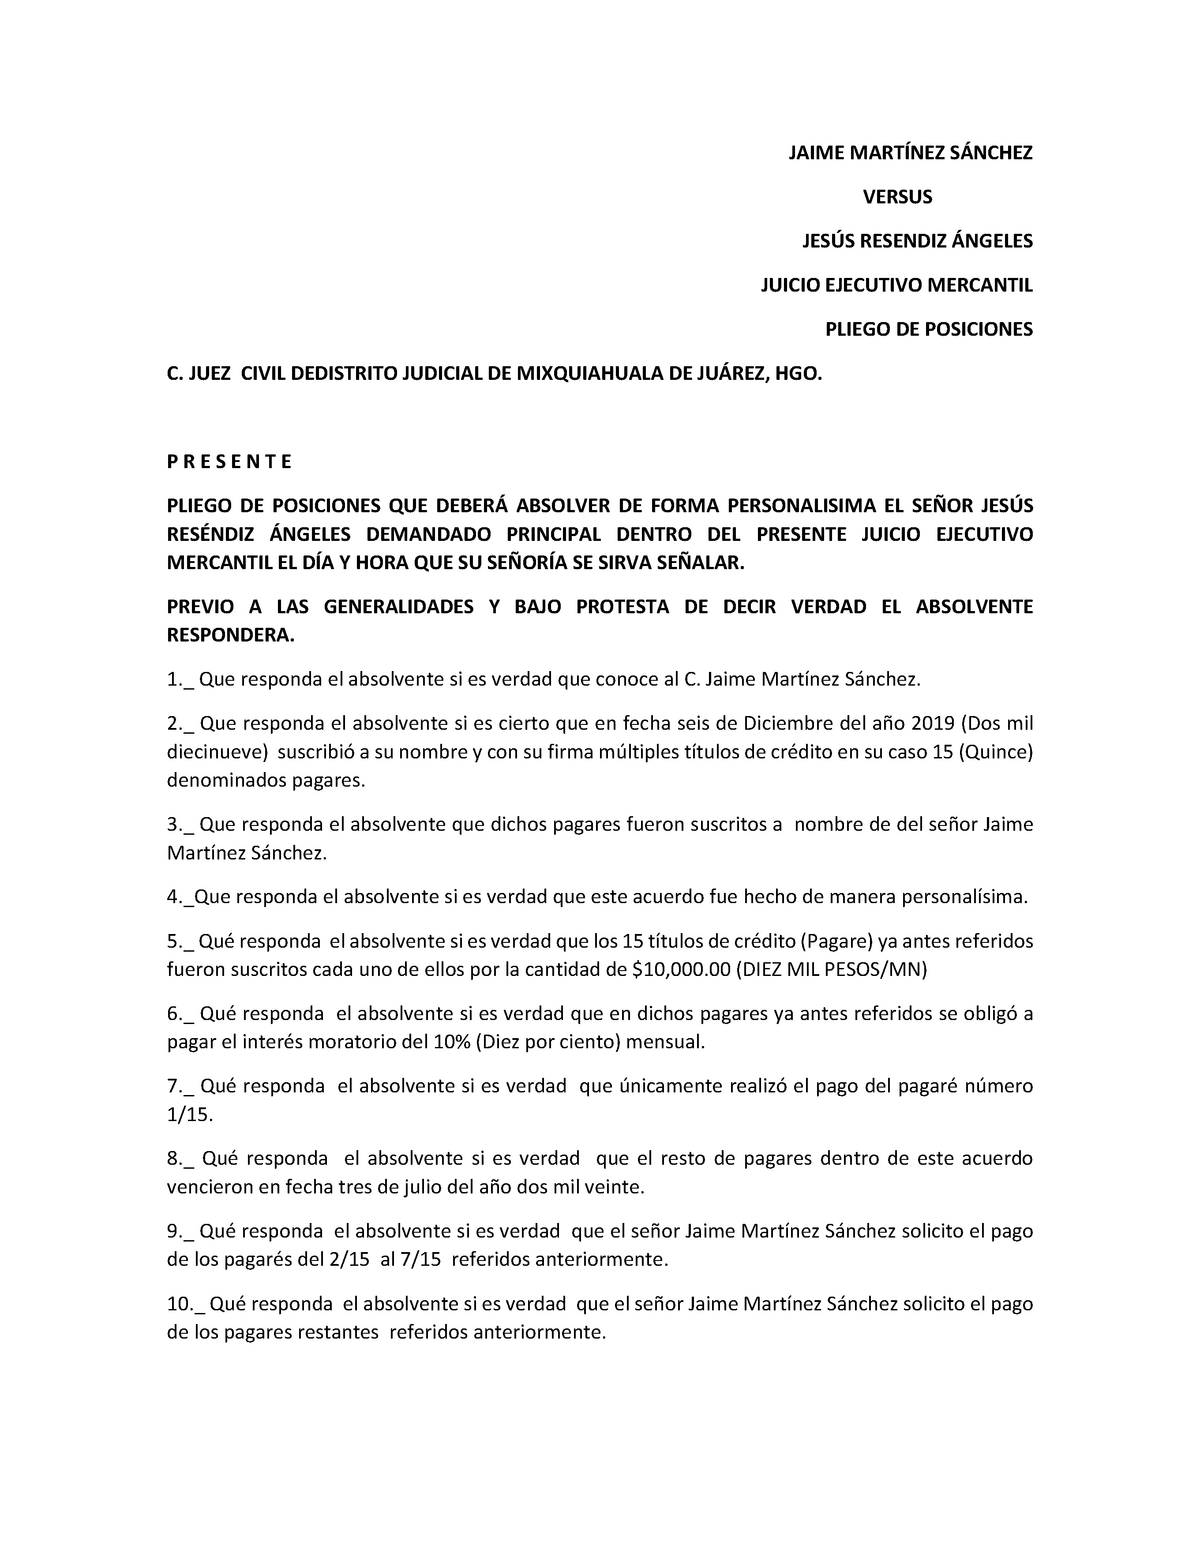 Pliego DE Posiciones para juicio ordinario mercantil - Derecho Mercantil  III - UAEH - Studocu